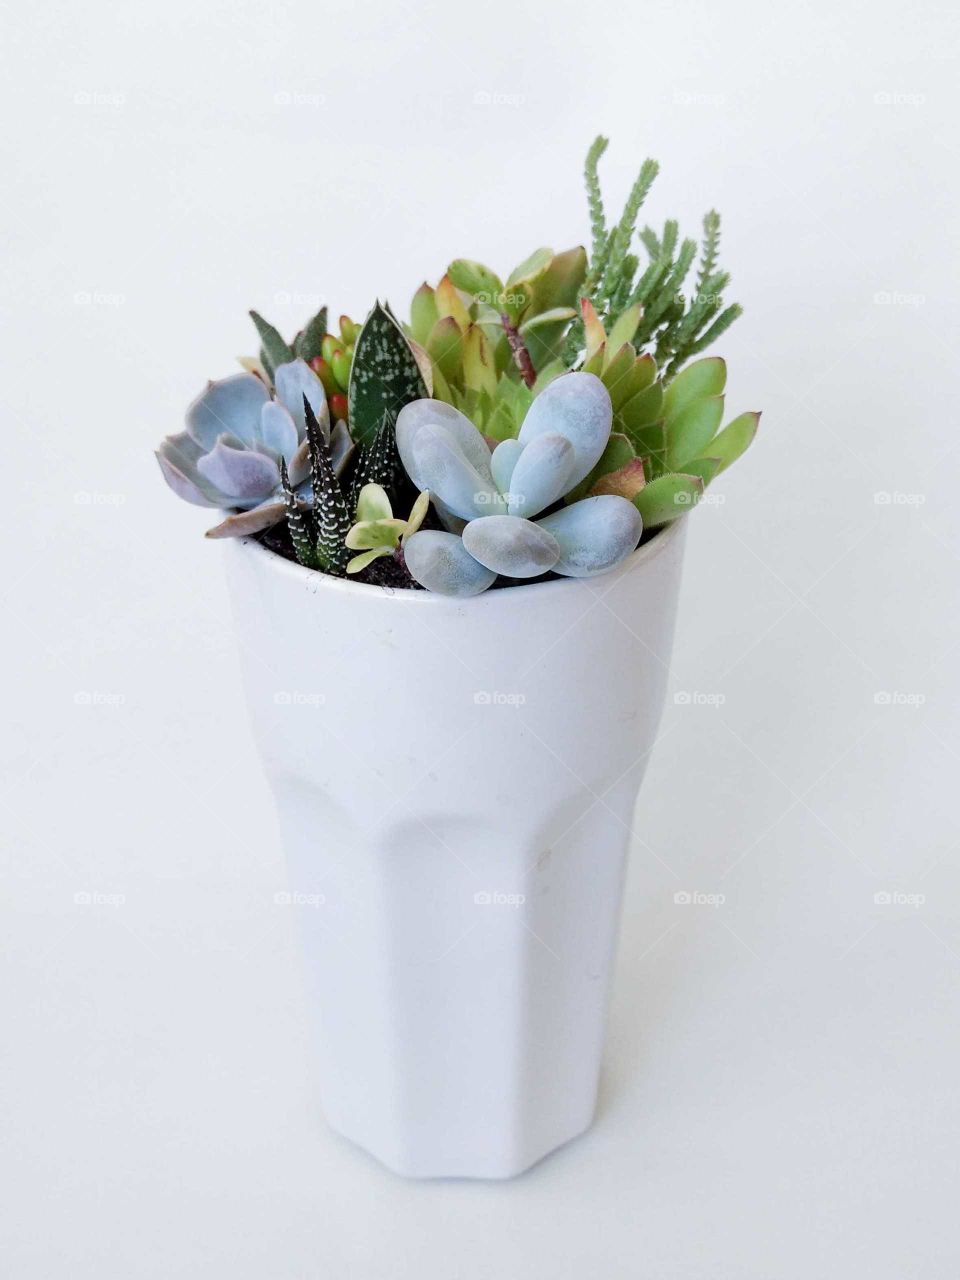 The succulent terrarium in ceramic pot